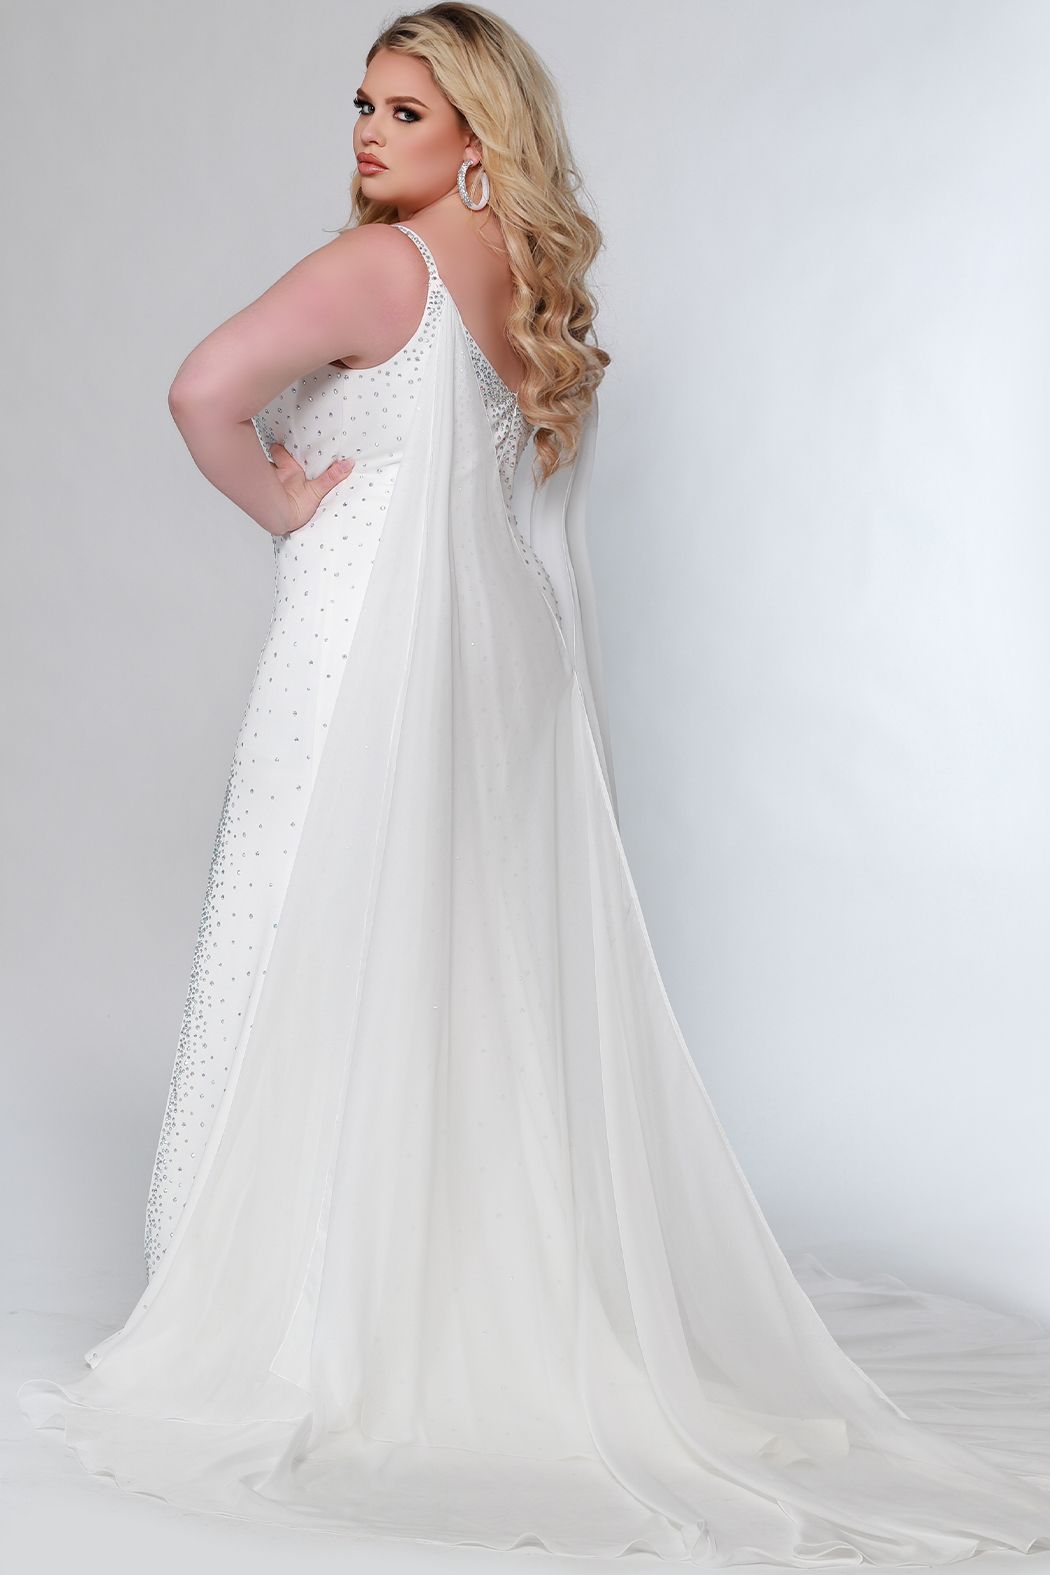 Johnathan Kayne Sydney's Closet JK2218 Size 14 Maverick Prom Dress with Cape